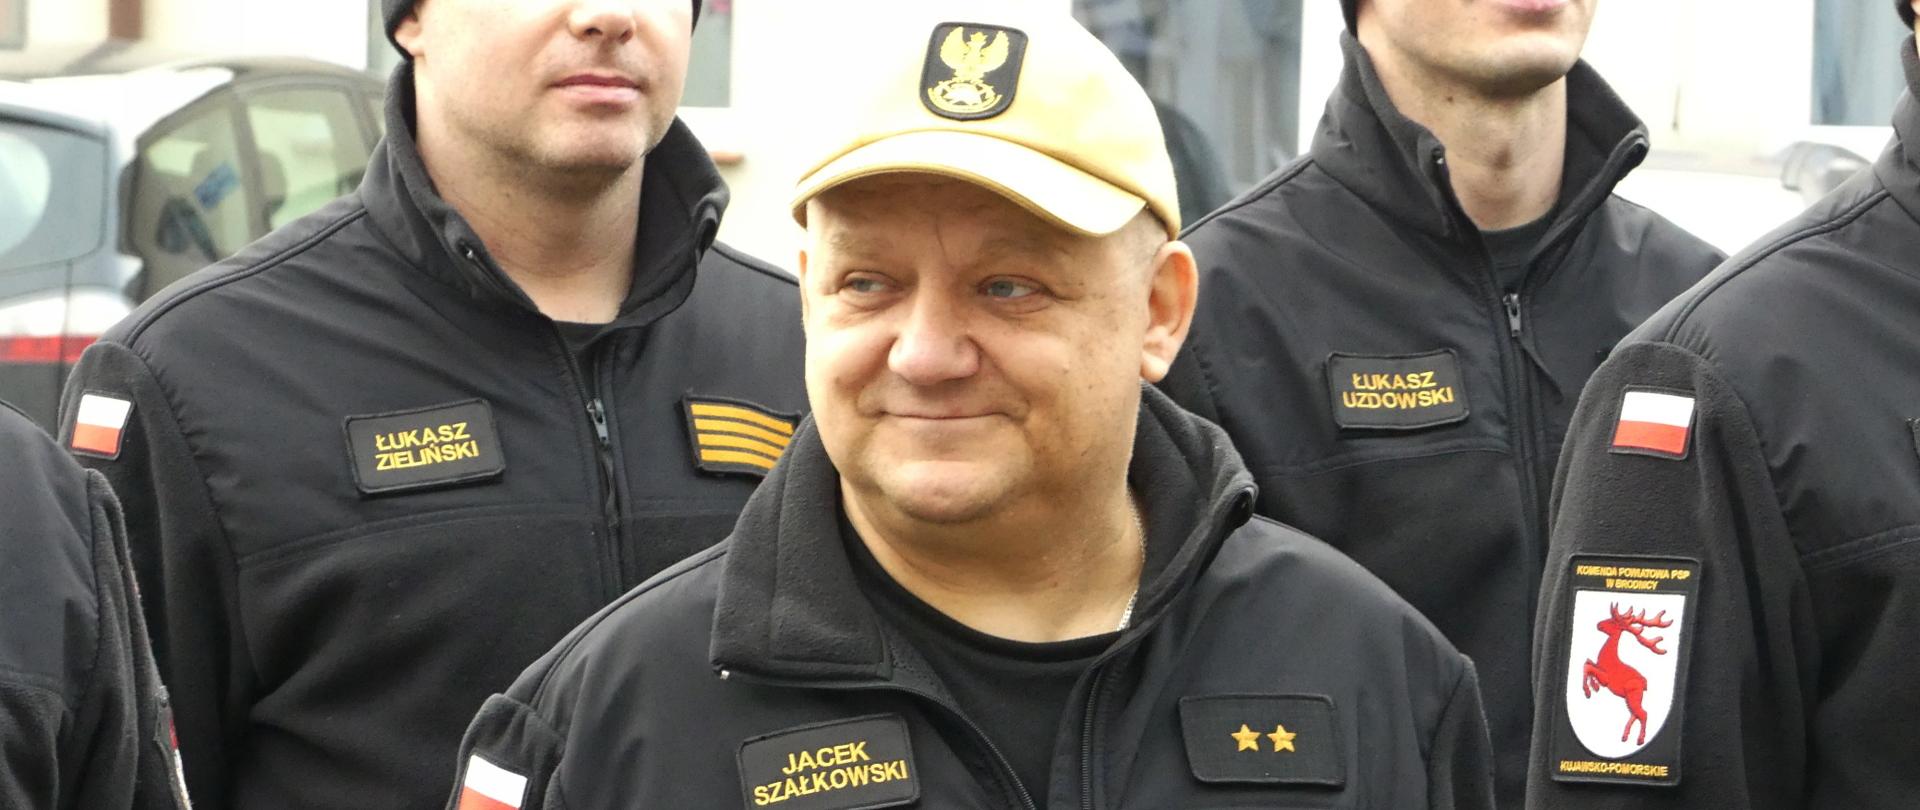 Zdjęcie przedstawia przechodzącego na zaopatrzenie emerytalne st. asp. Jacka Szałkowskiego podczas uroczystej zmiany służby połączonej z podziękowaniem za służbę.